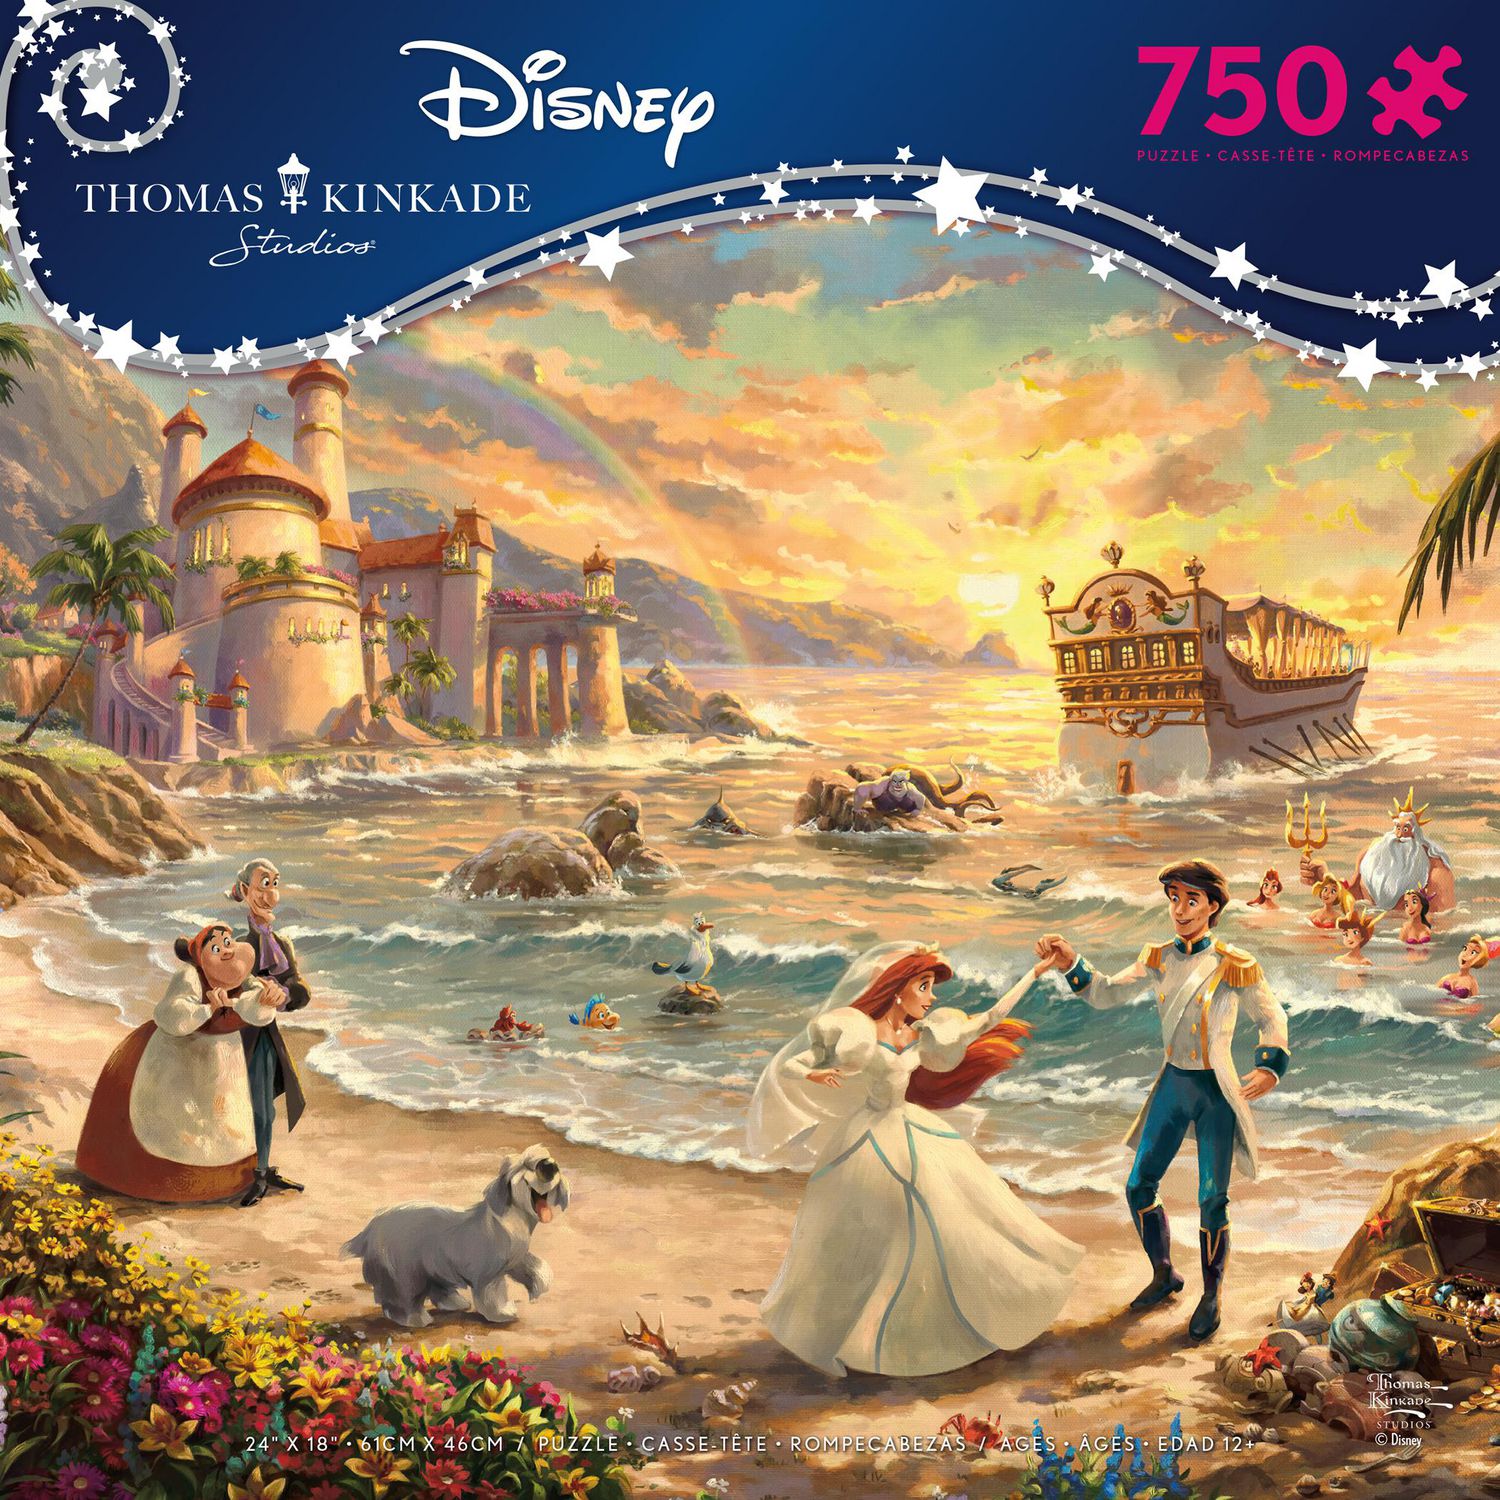 Ceaco - Thomas Kinkade Disney - The Little Mermaid Celebration of